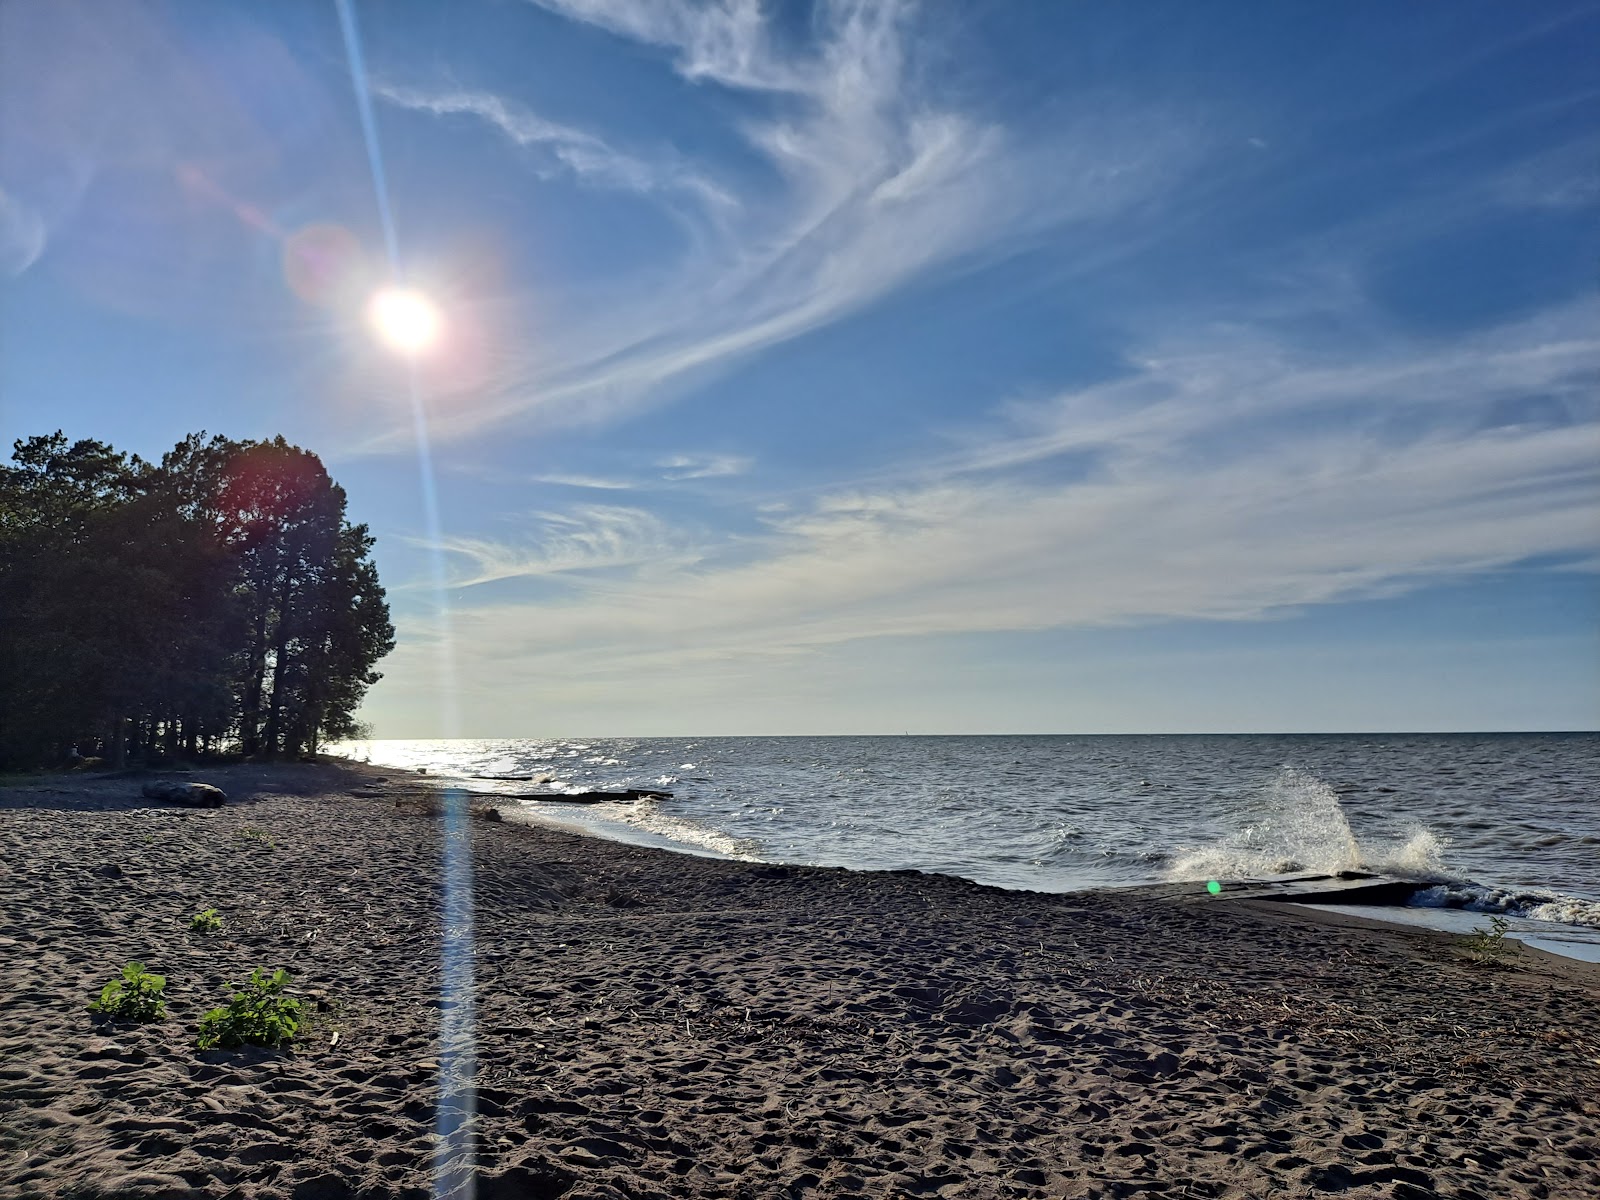 Fotografie cu Raccoon Beach amplasat într-o zonă naturală